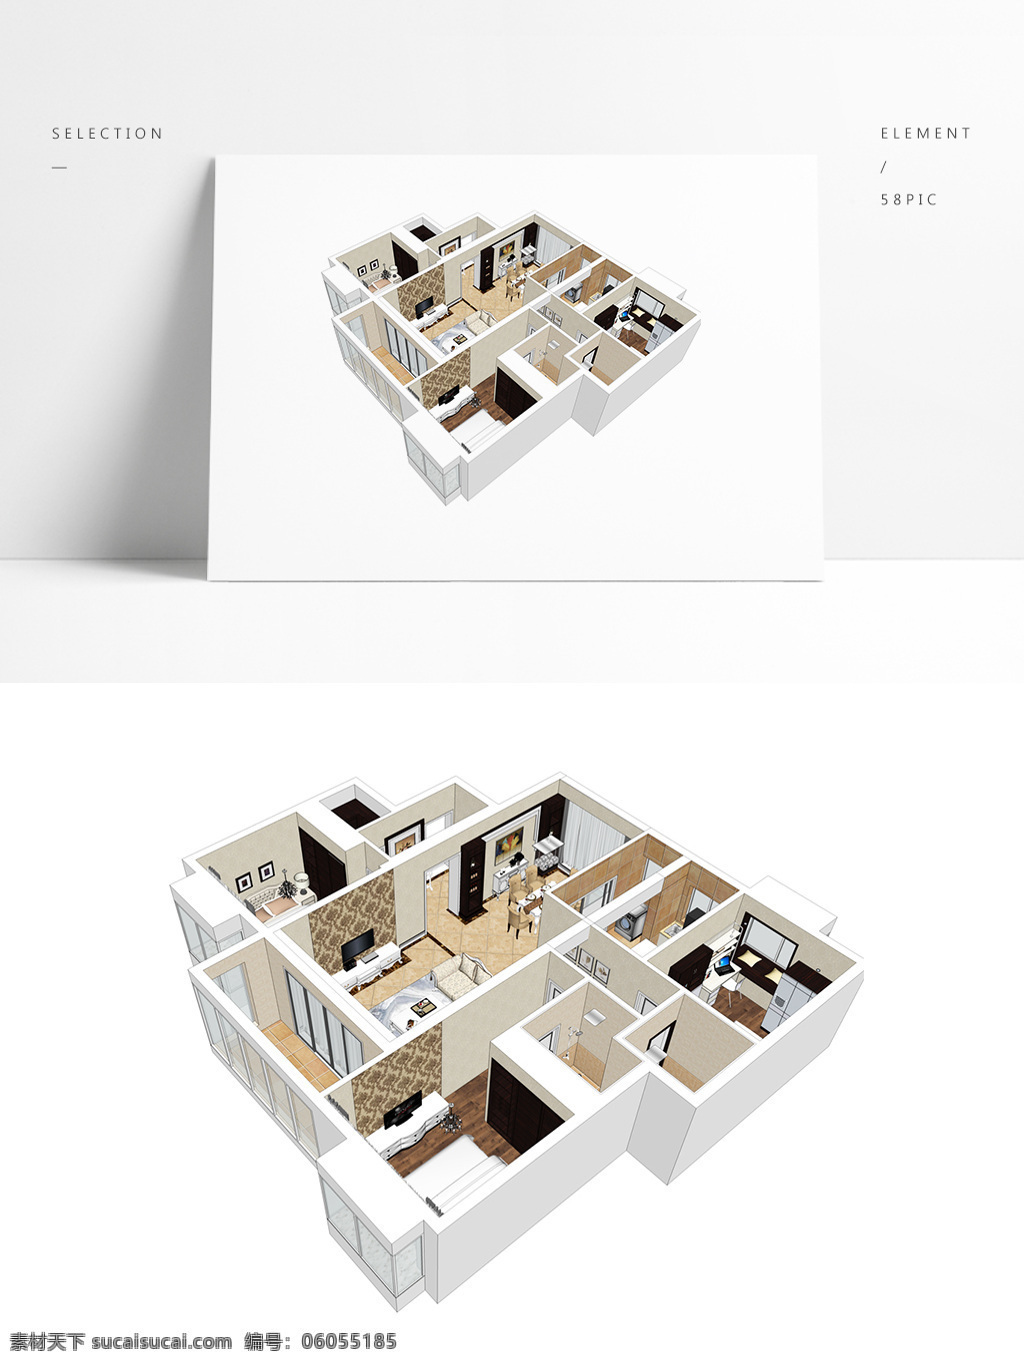 欧式 风格 su 透视 模型 时尚 风 住宅设计 室内空间设计 住宅室内设计 样板房 3d模型 su模型 草图大师模型 家具模型